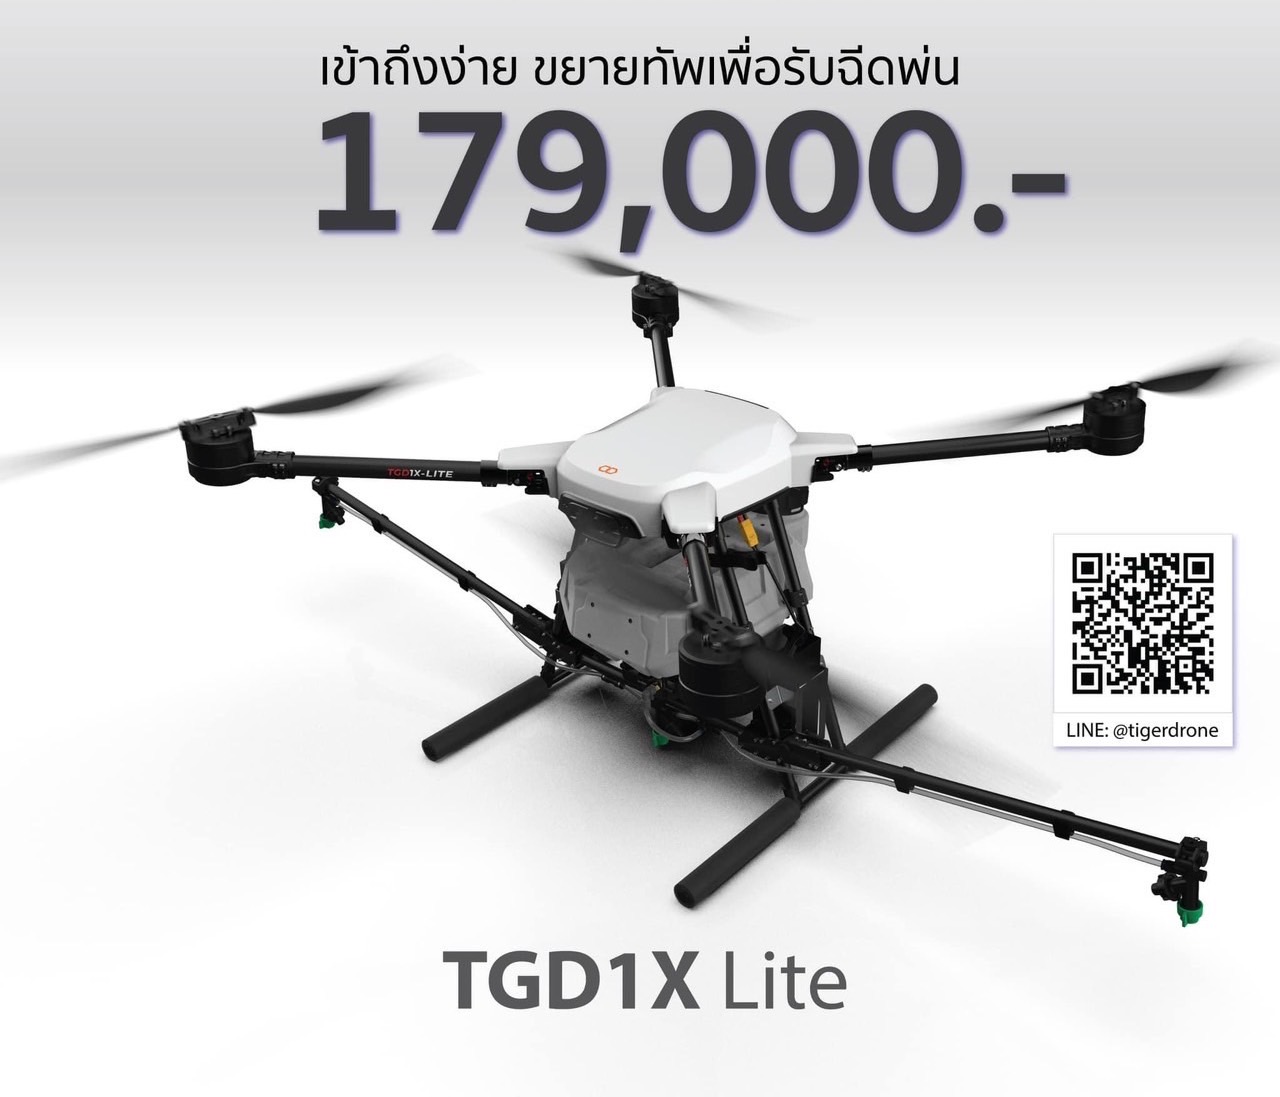 TGD1XLite Price | HiveGround | ทรู ดิจิทัล เสริมแกร่งสตาร์ทอัพไทย ลงทุนธุรกิจนวัตกรรมส่ง “ไทเกอร์โดรน” เจาะกลุ่มเกษตรกรไทย